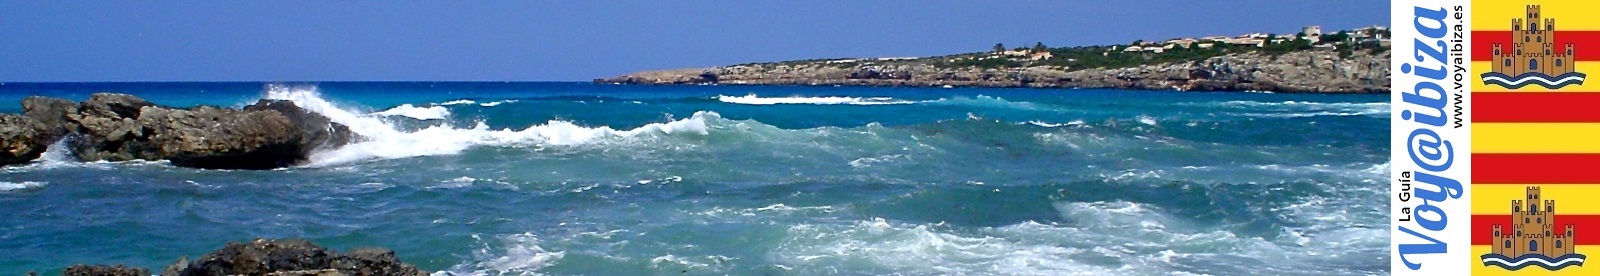 Baila al son del mar entre Ibiza y Formentera